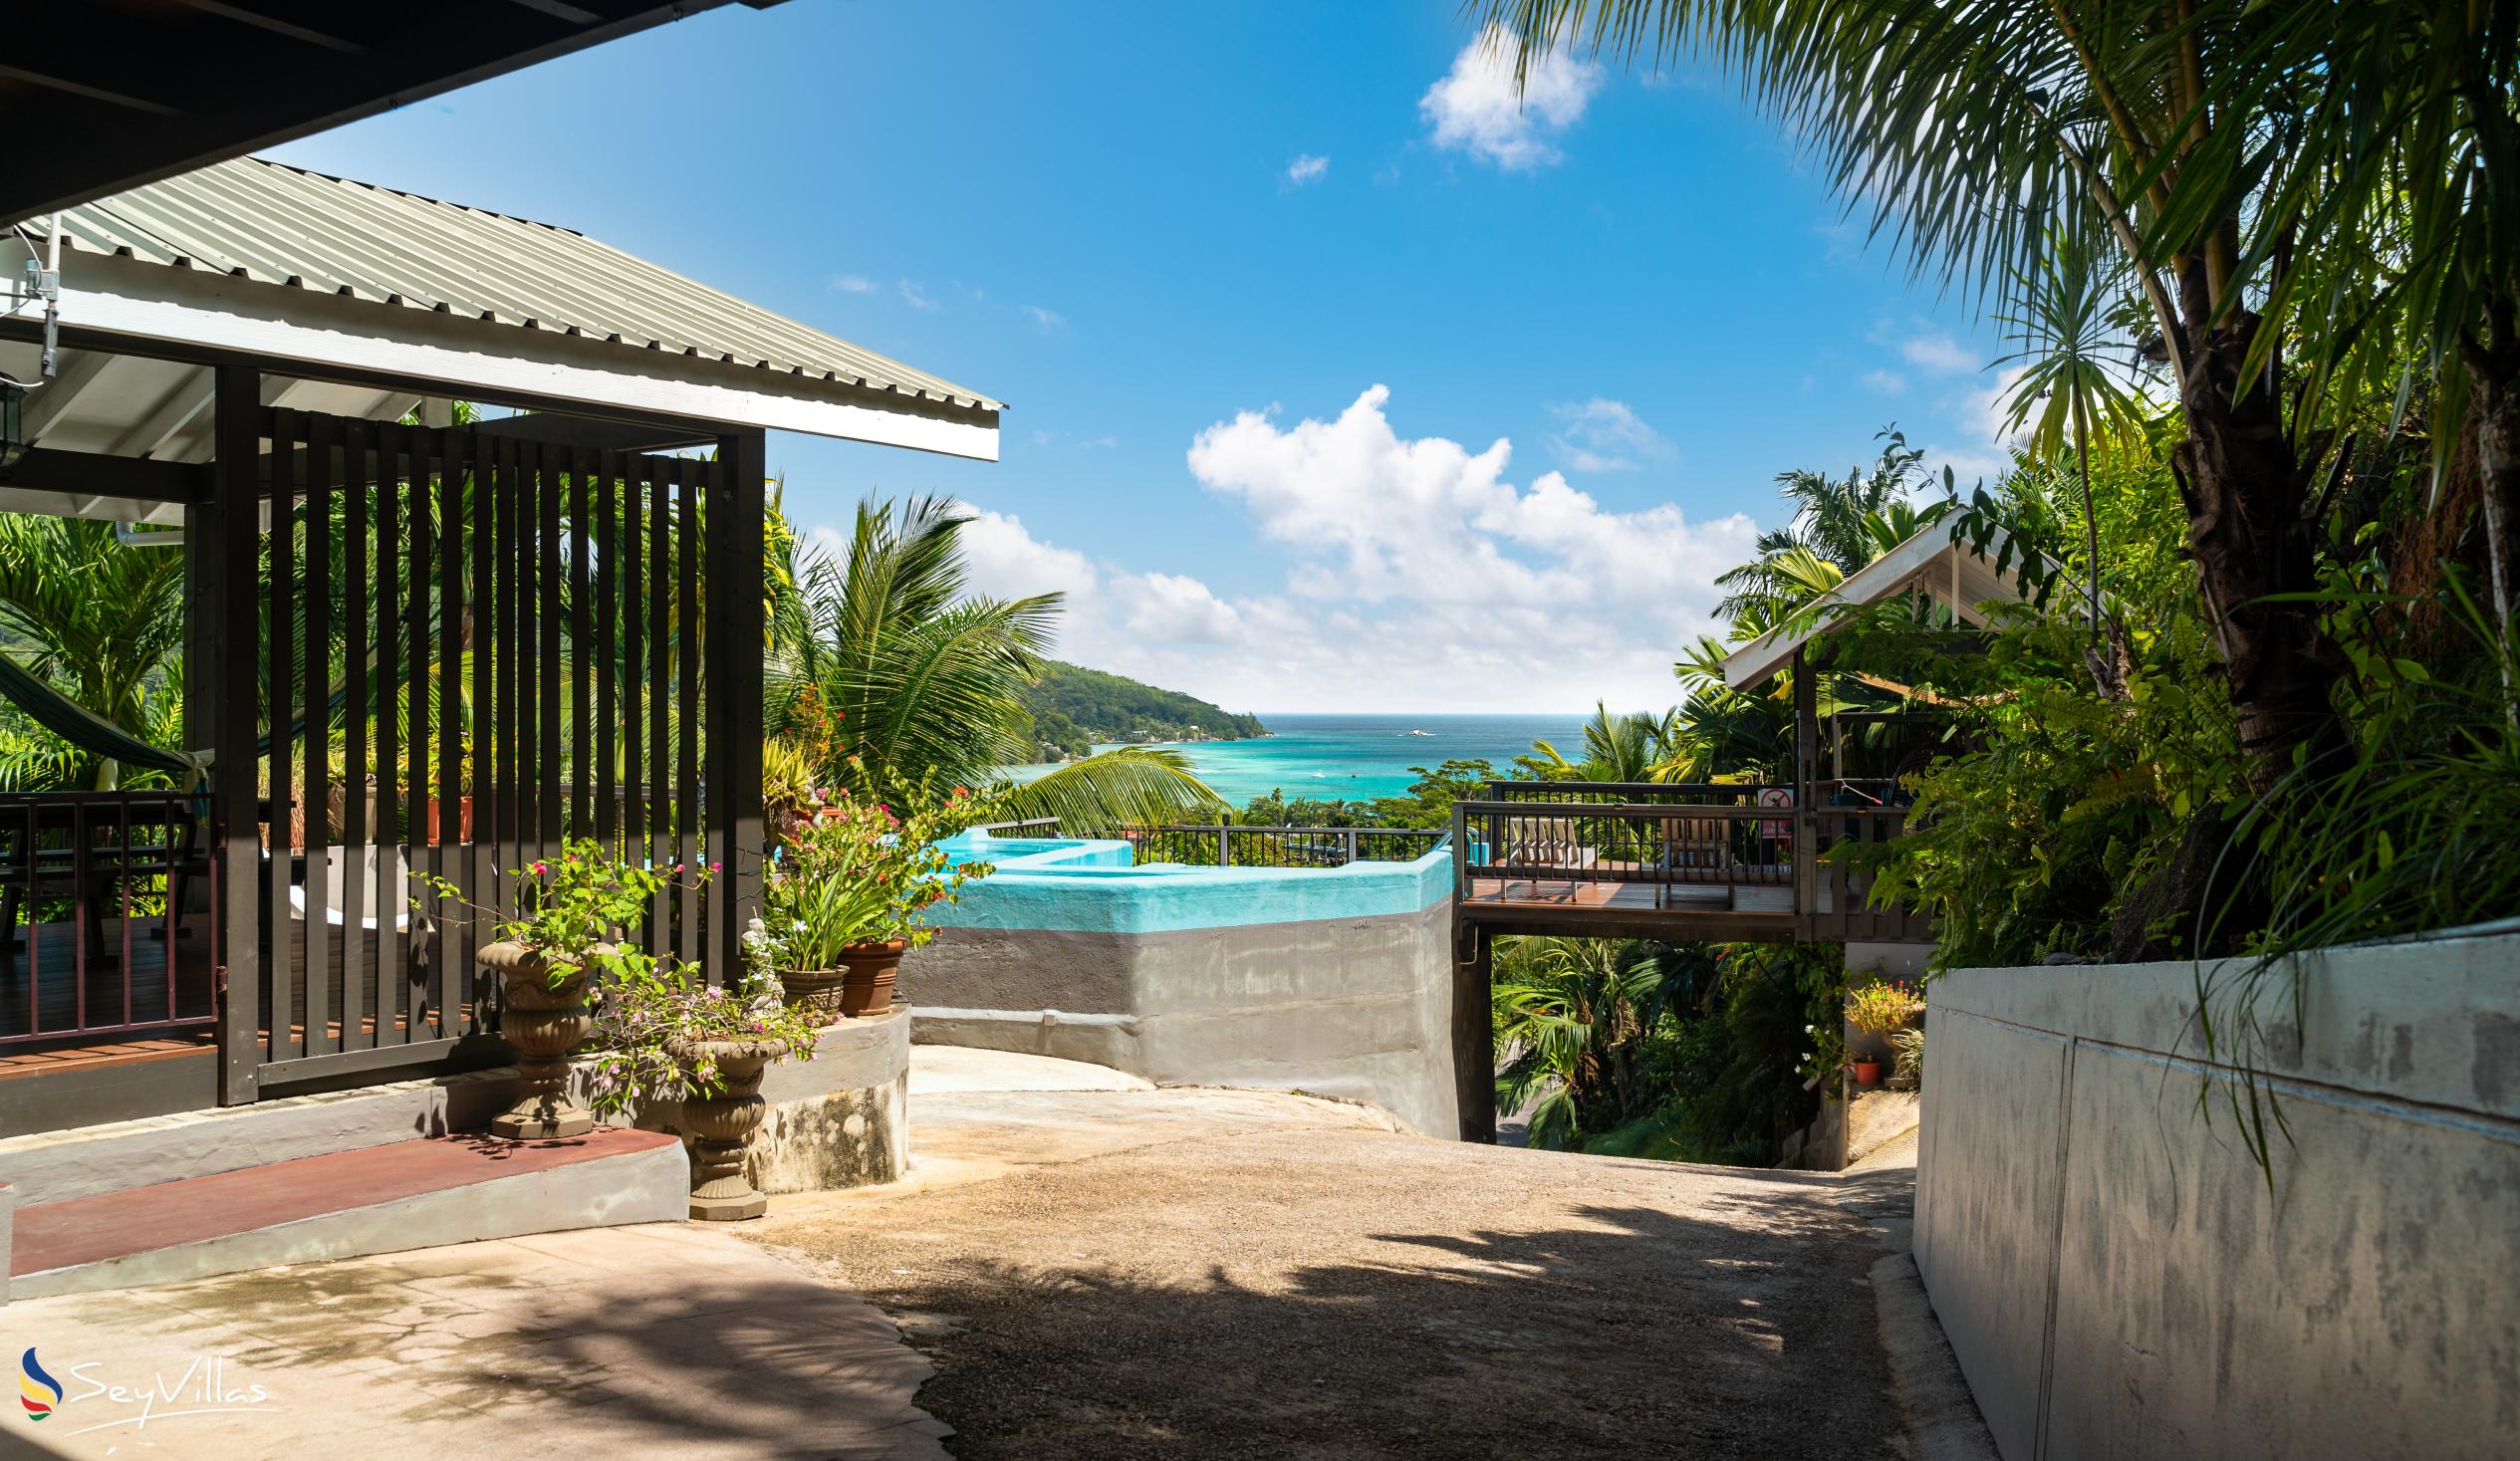 Foto 22: Stephna Residence - Aussenbereich - Mahé (Seychellen)